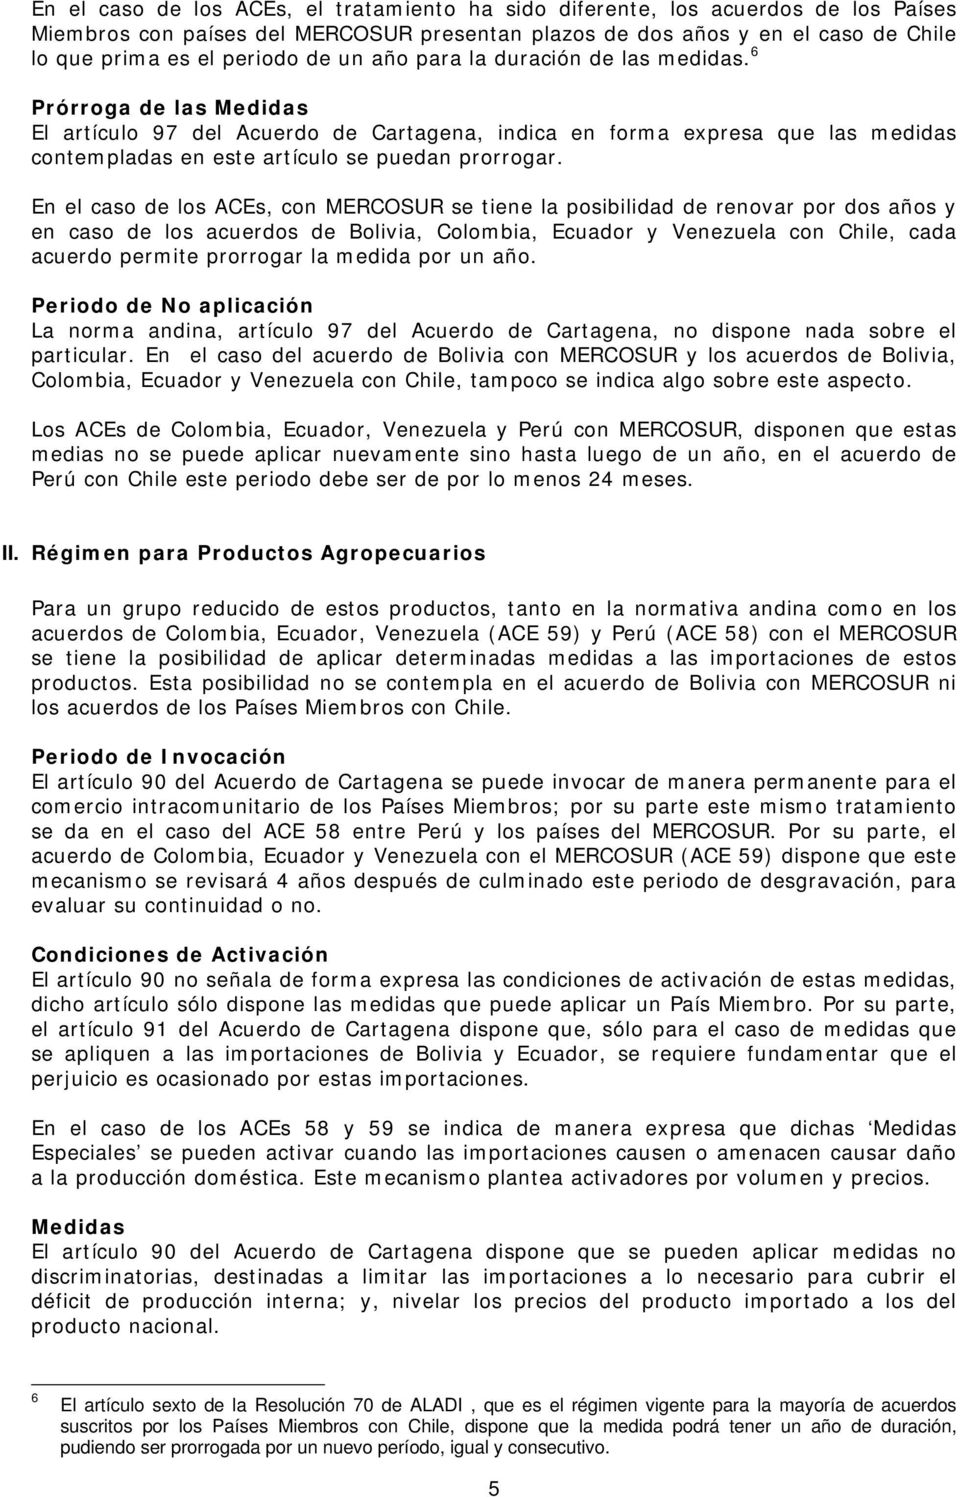 En el caso de los ACEs, con MERCOSUR se tiene la posibilidad de renovar por dos años y en caso de los acuerdos de Bolivia, Colombia, Ecuador y Venezuela con Chile, cada acuerdo permite prorrogar la